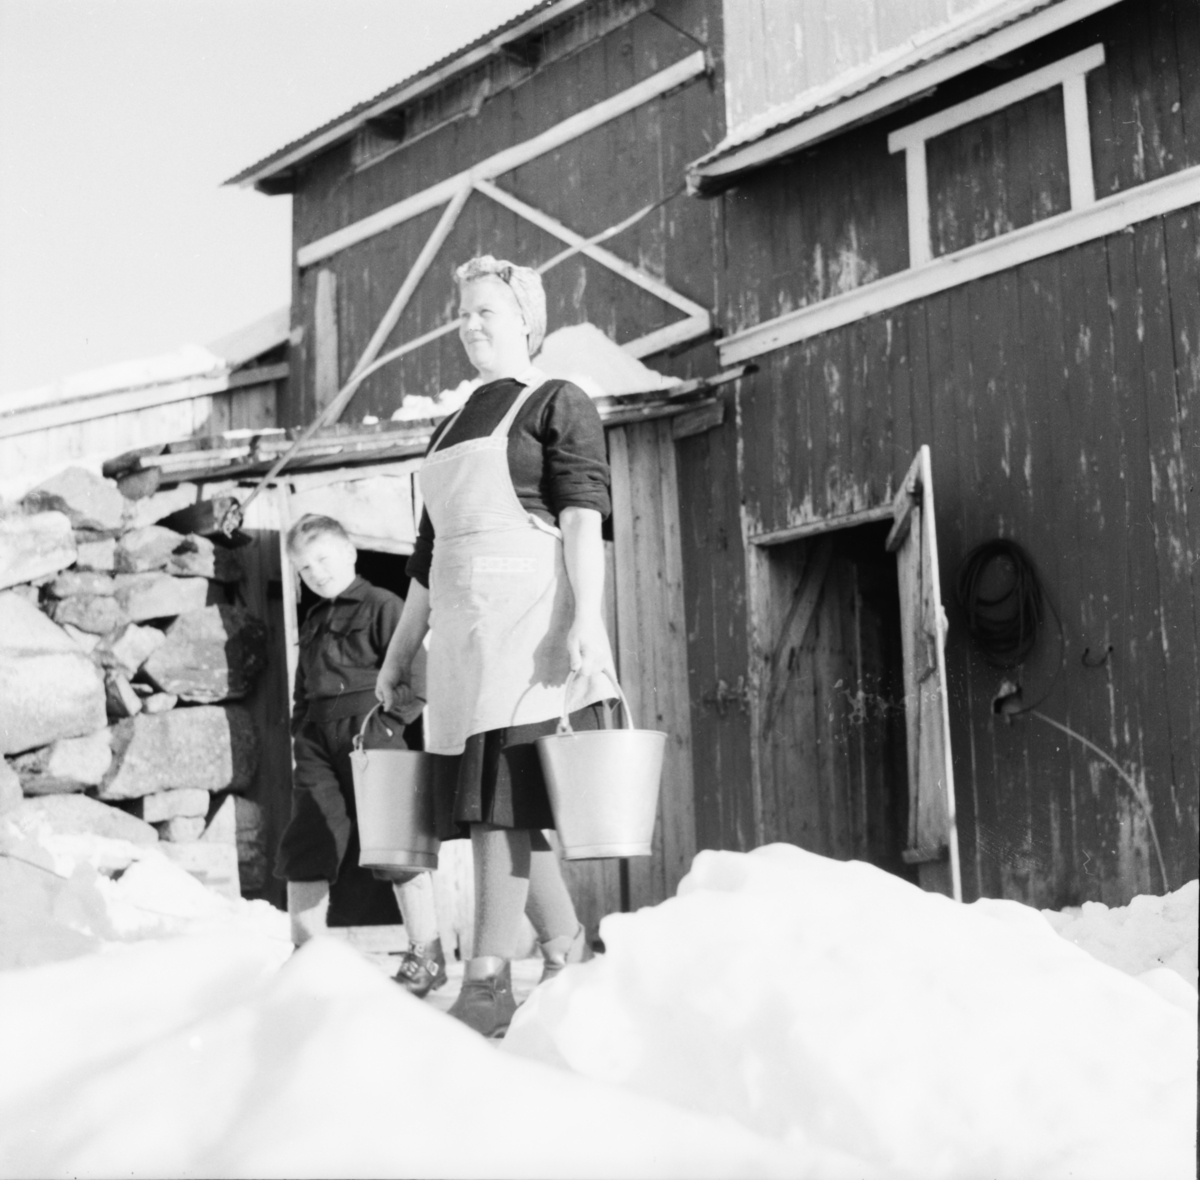 Vardens arkiv. "Besøk på fjellgård mellom Rauland og Rjukan" 07.01.1954